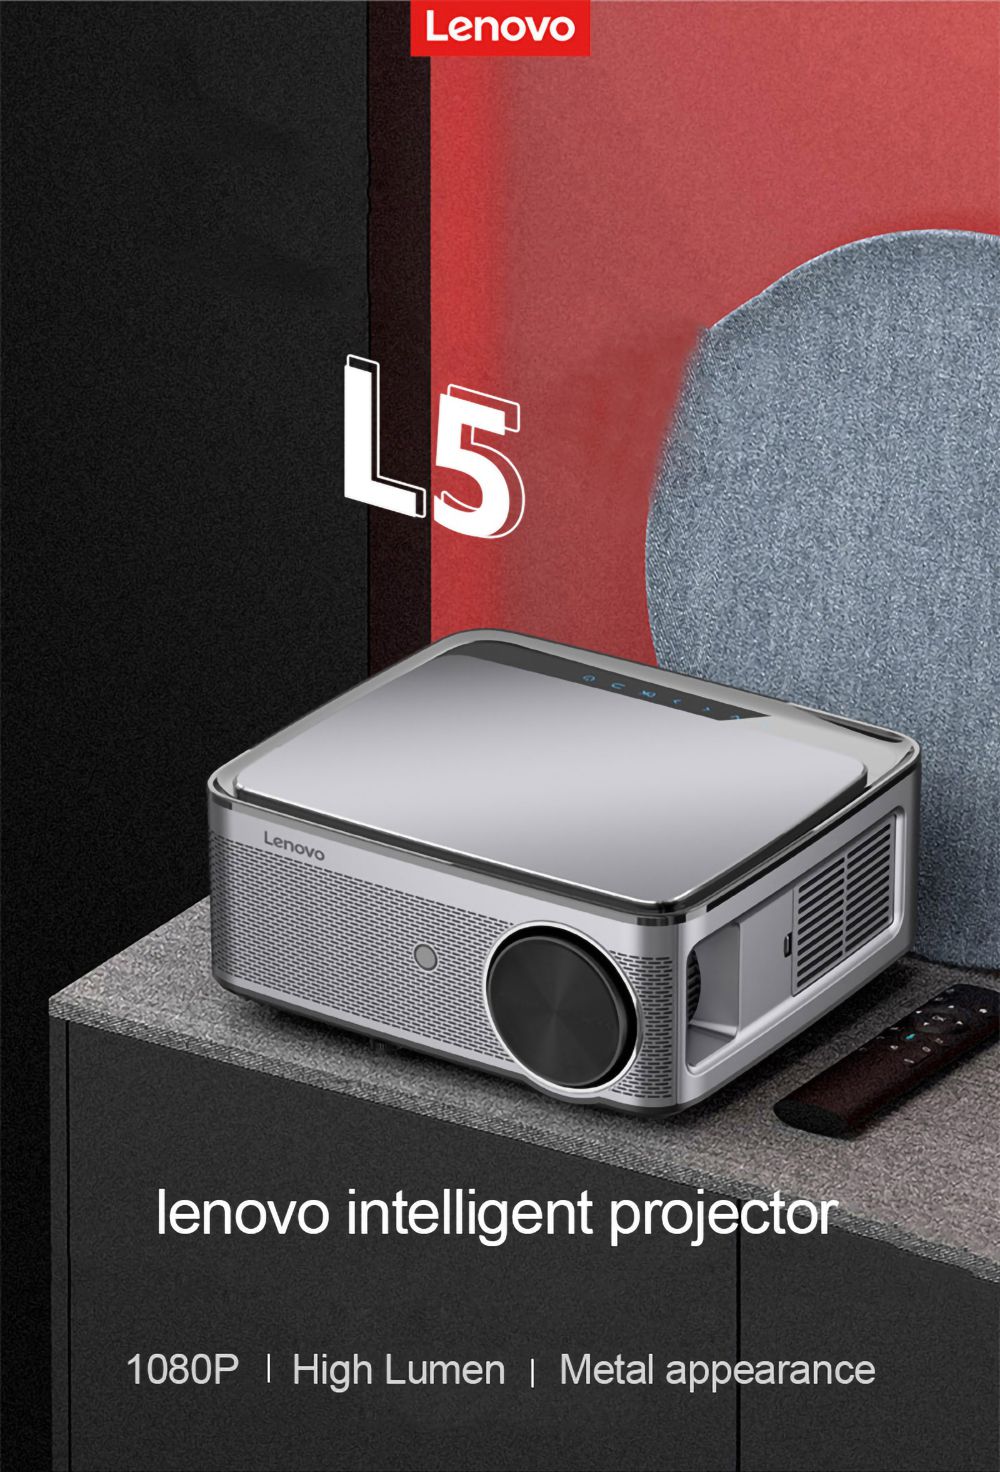 الإصدار العالمي Lenovo L5 Smart LED WIFI Projector Android TV System 450 ANSI Lumens 1080P الدقة الأصلية